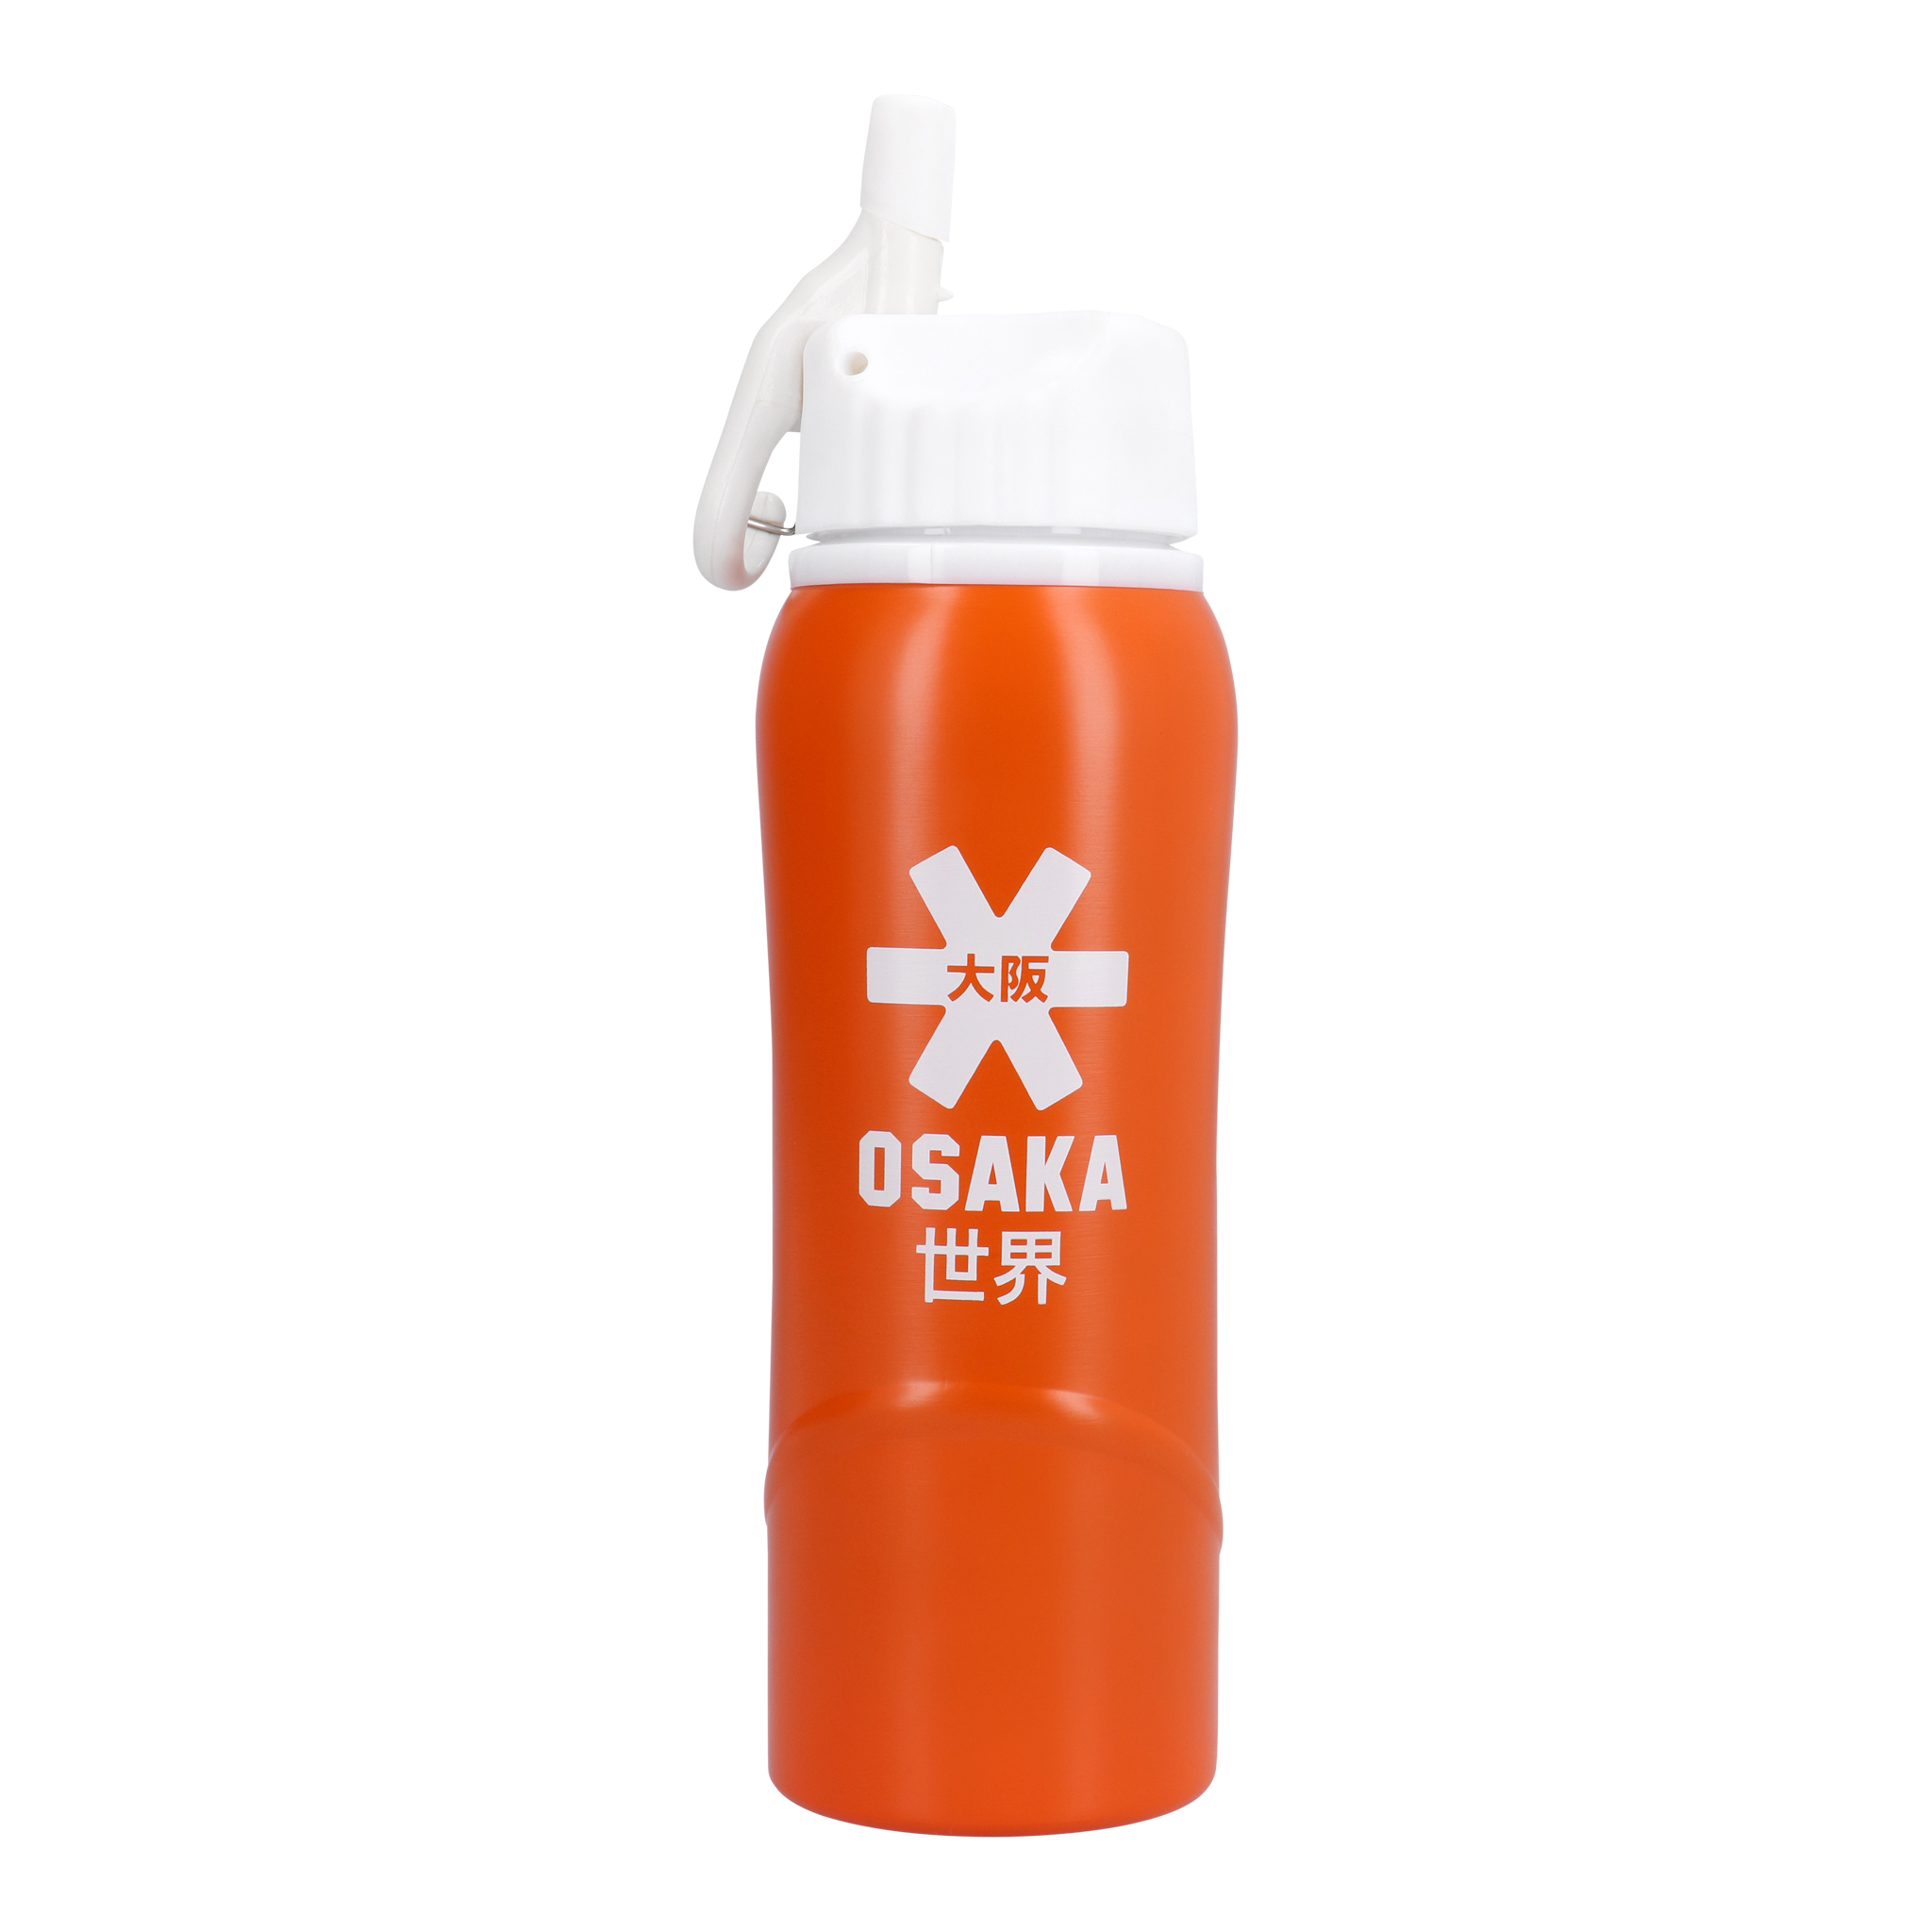 Osaka Kuro 3.0 Aluminium Bottle navy Trinkflasche